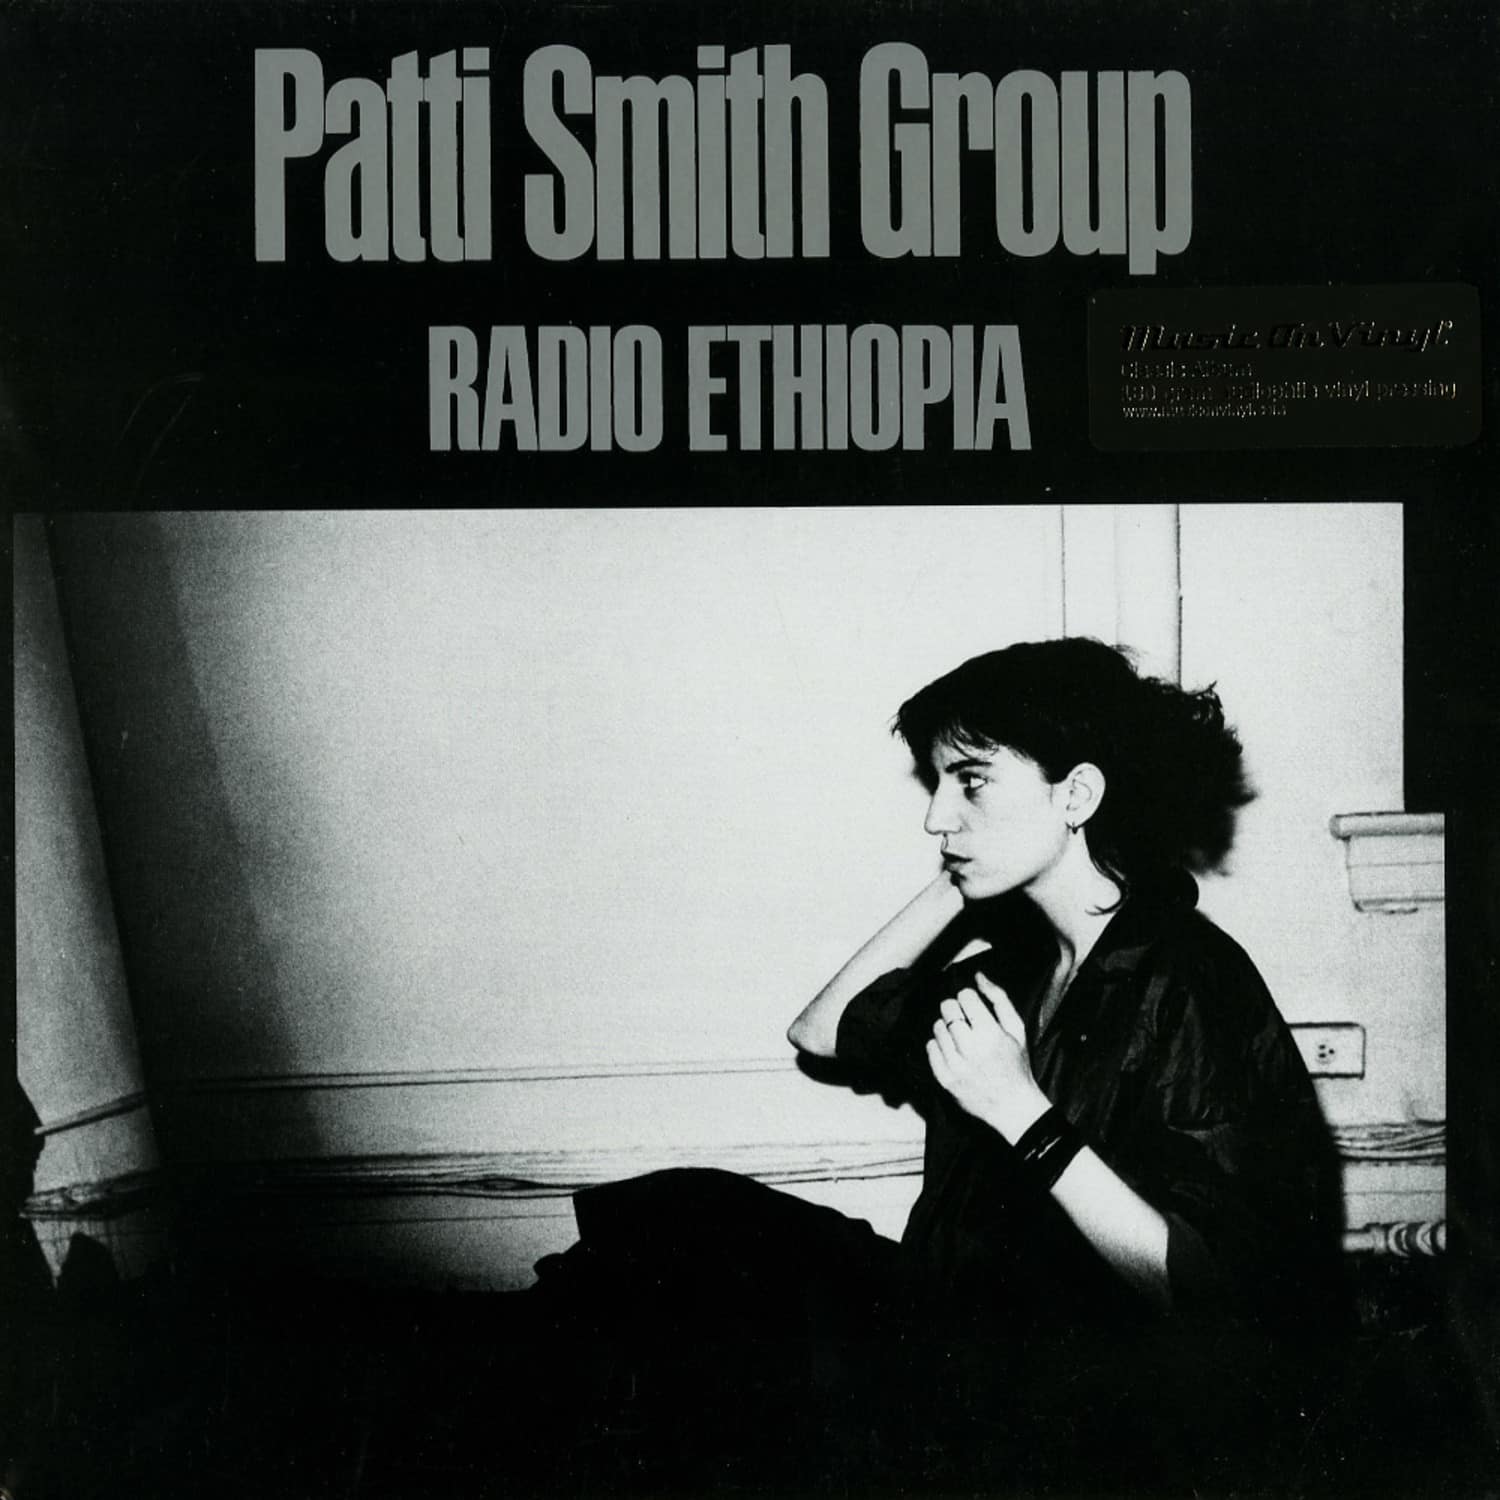 Patti Smith Group - RADIO ETHOPIA 